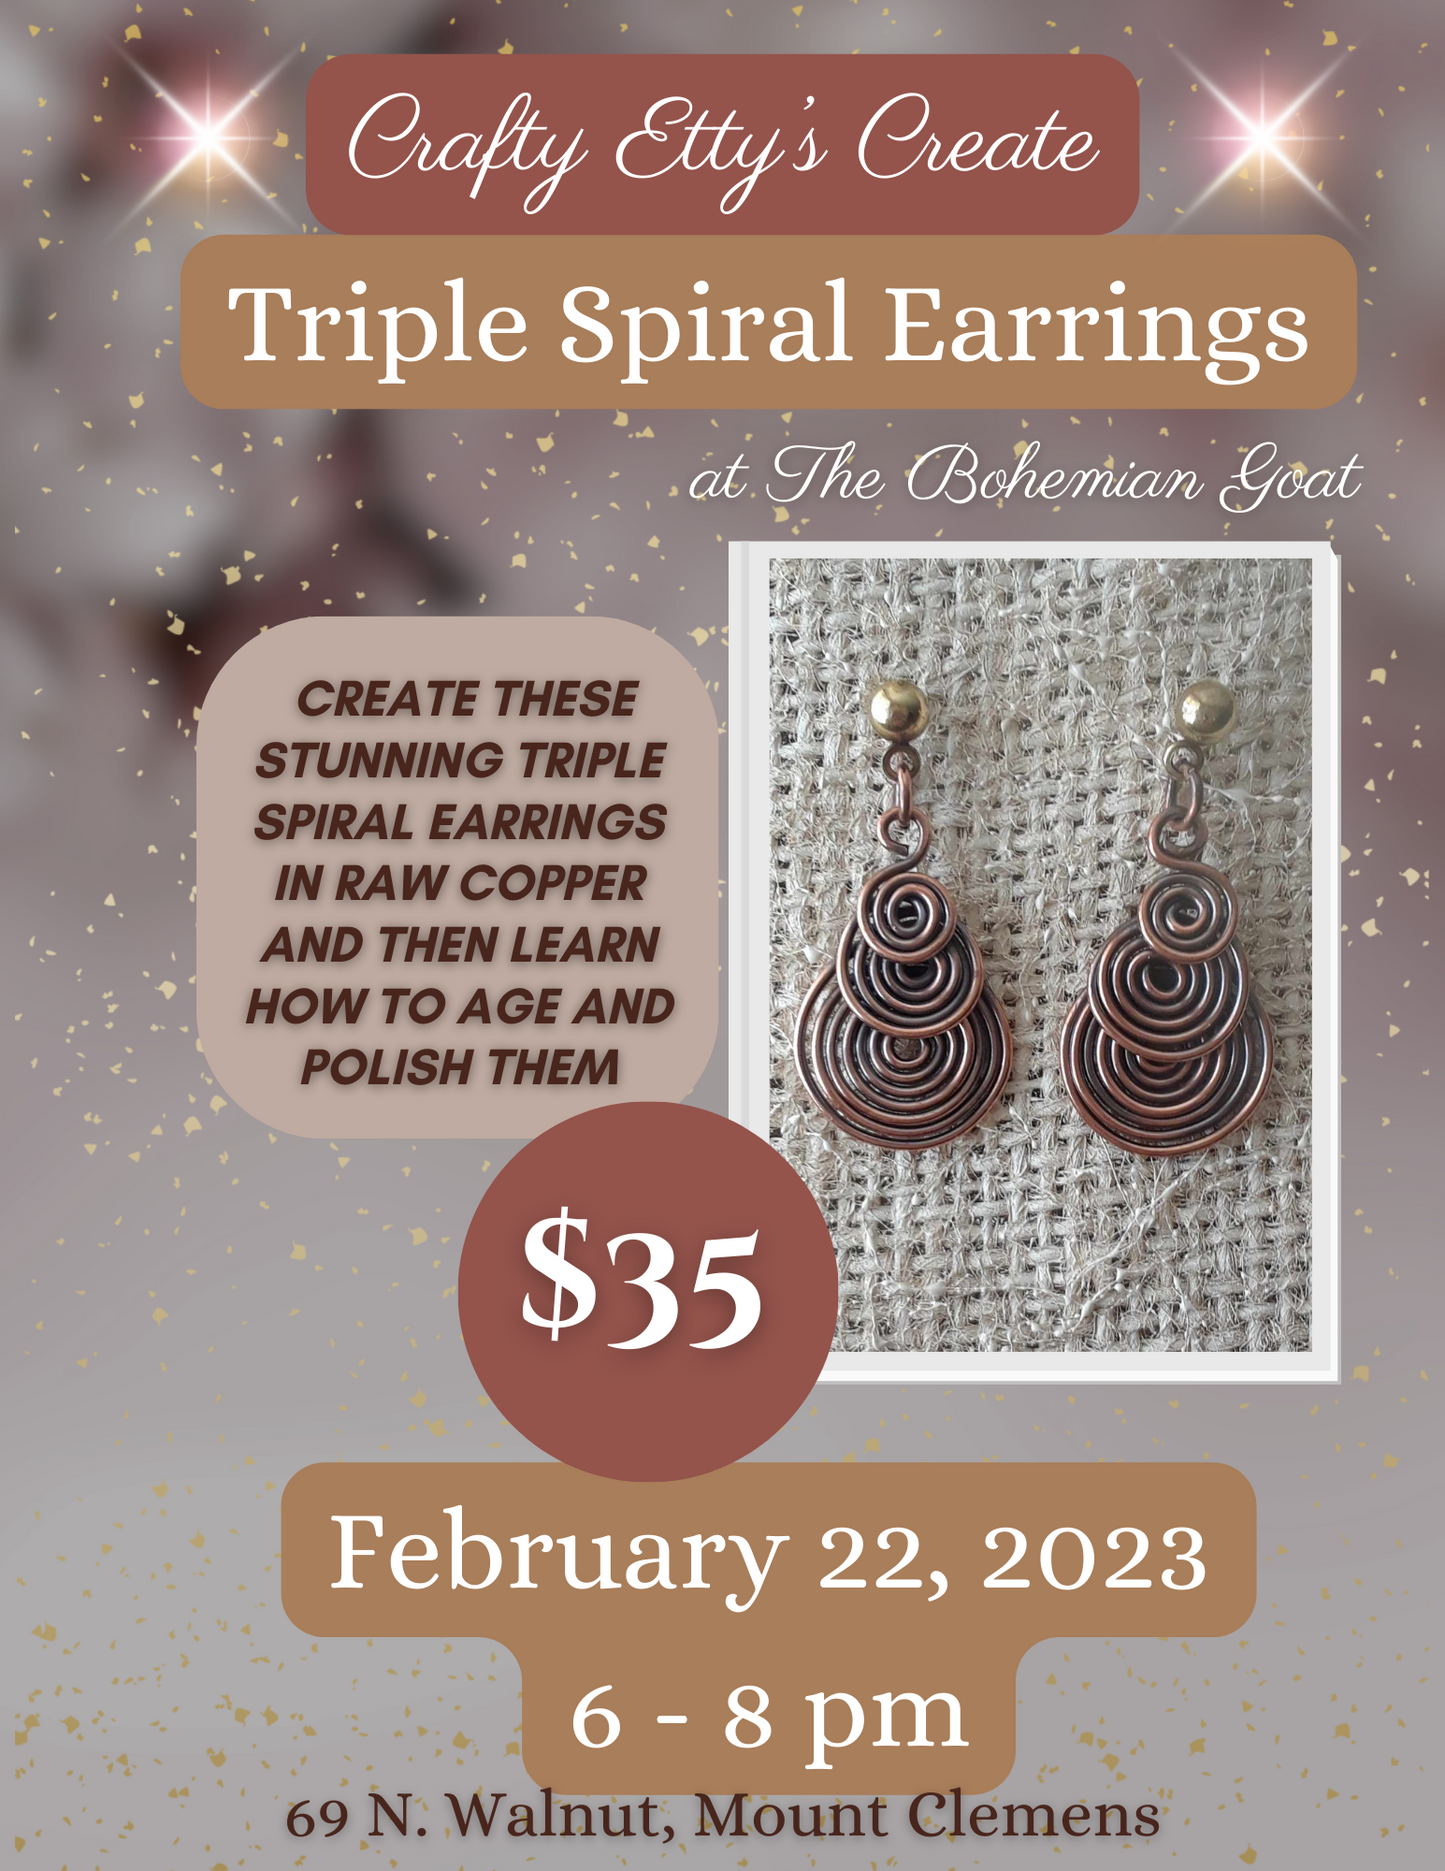 Crafty Etty's Triple Spiral Earrings Workshop